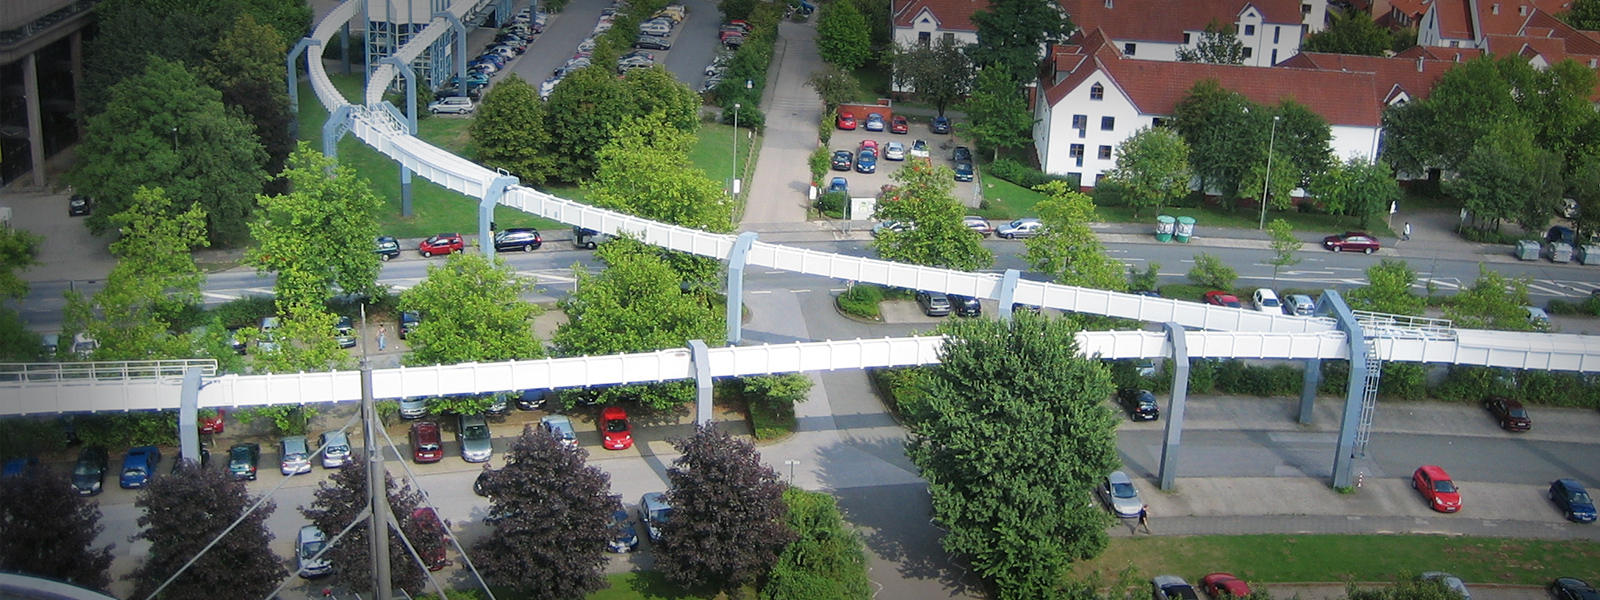 德国多特蒙特大学<br>H-Bahn悬挂式空轨